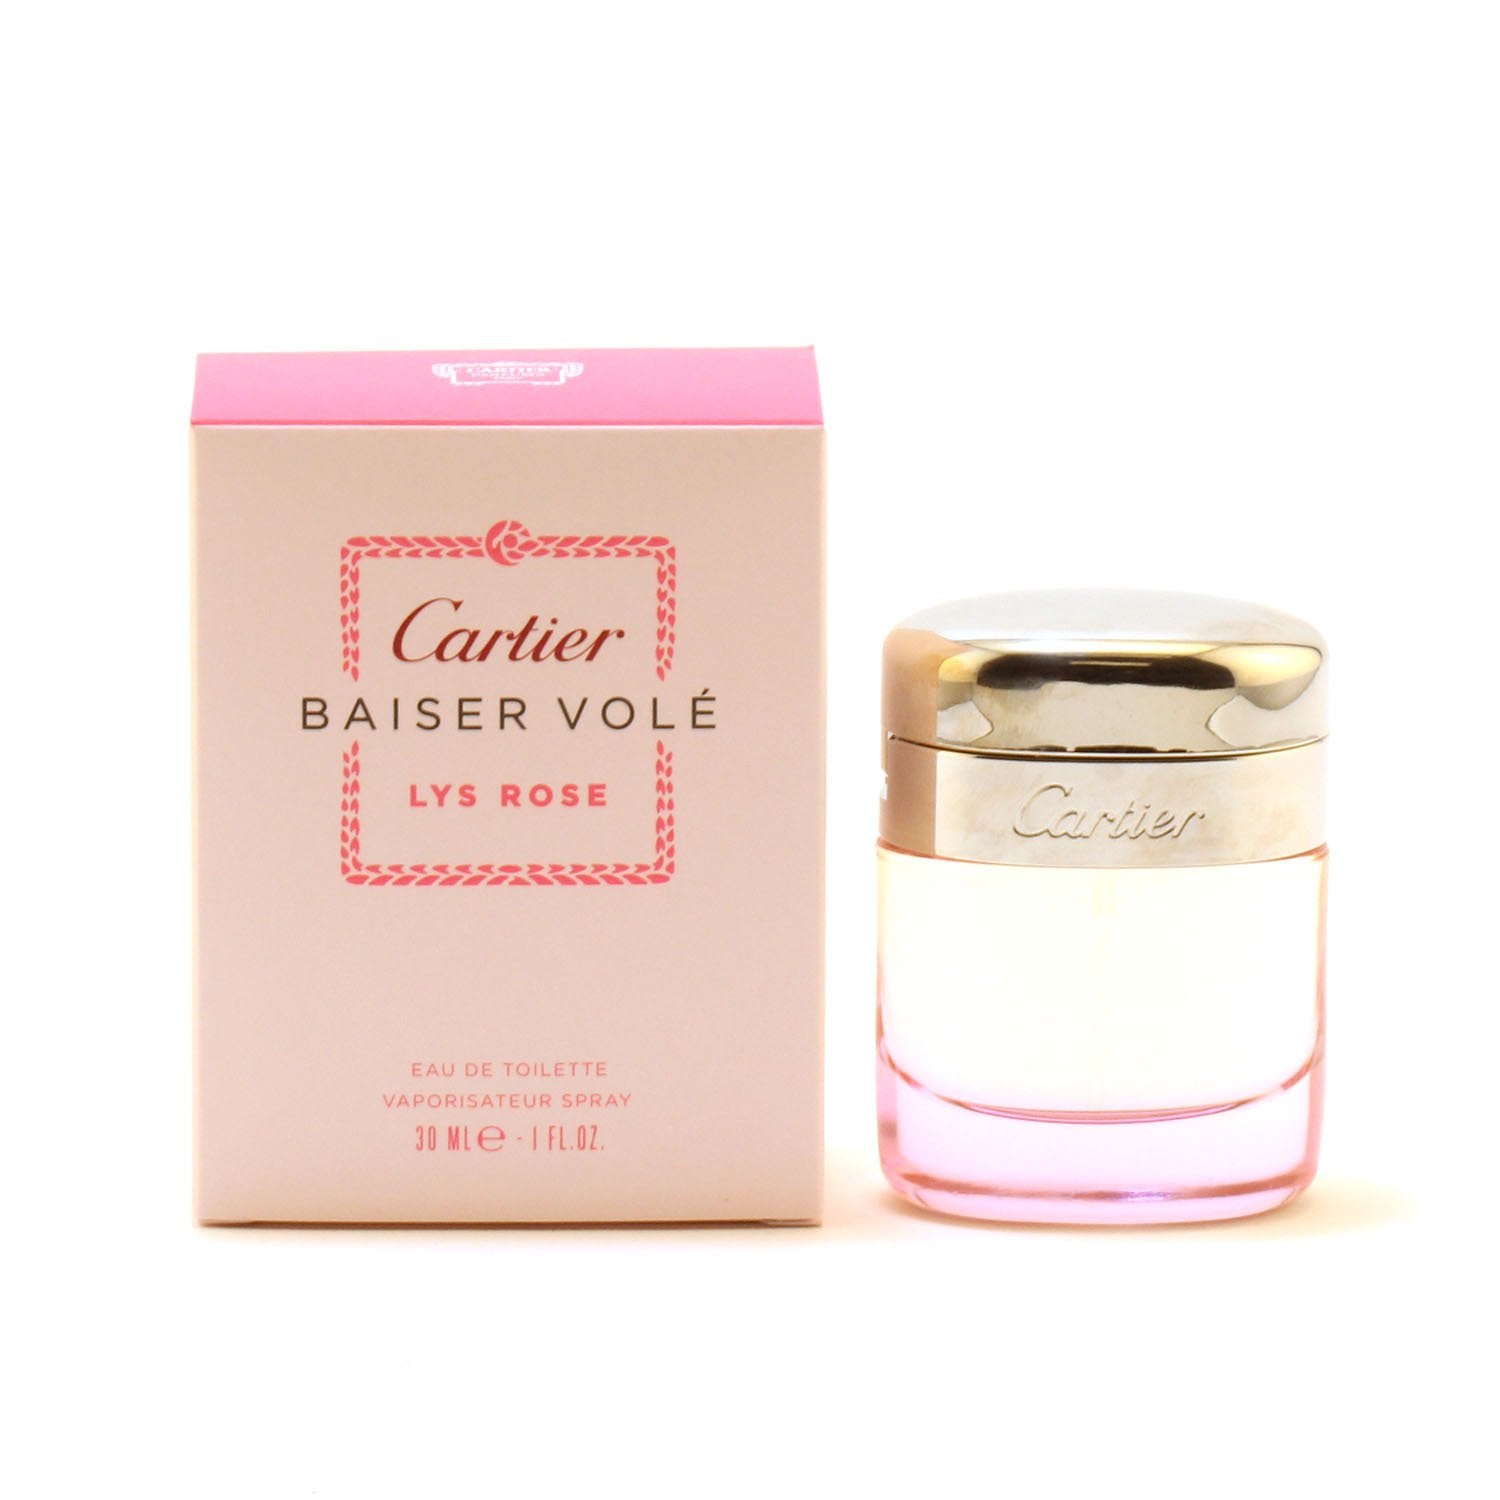 Perfume - CARTIER BAISER VOLE LYS ROSE FOR WOMEN - EAU DE TOILETTE SPRAY